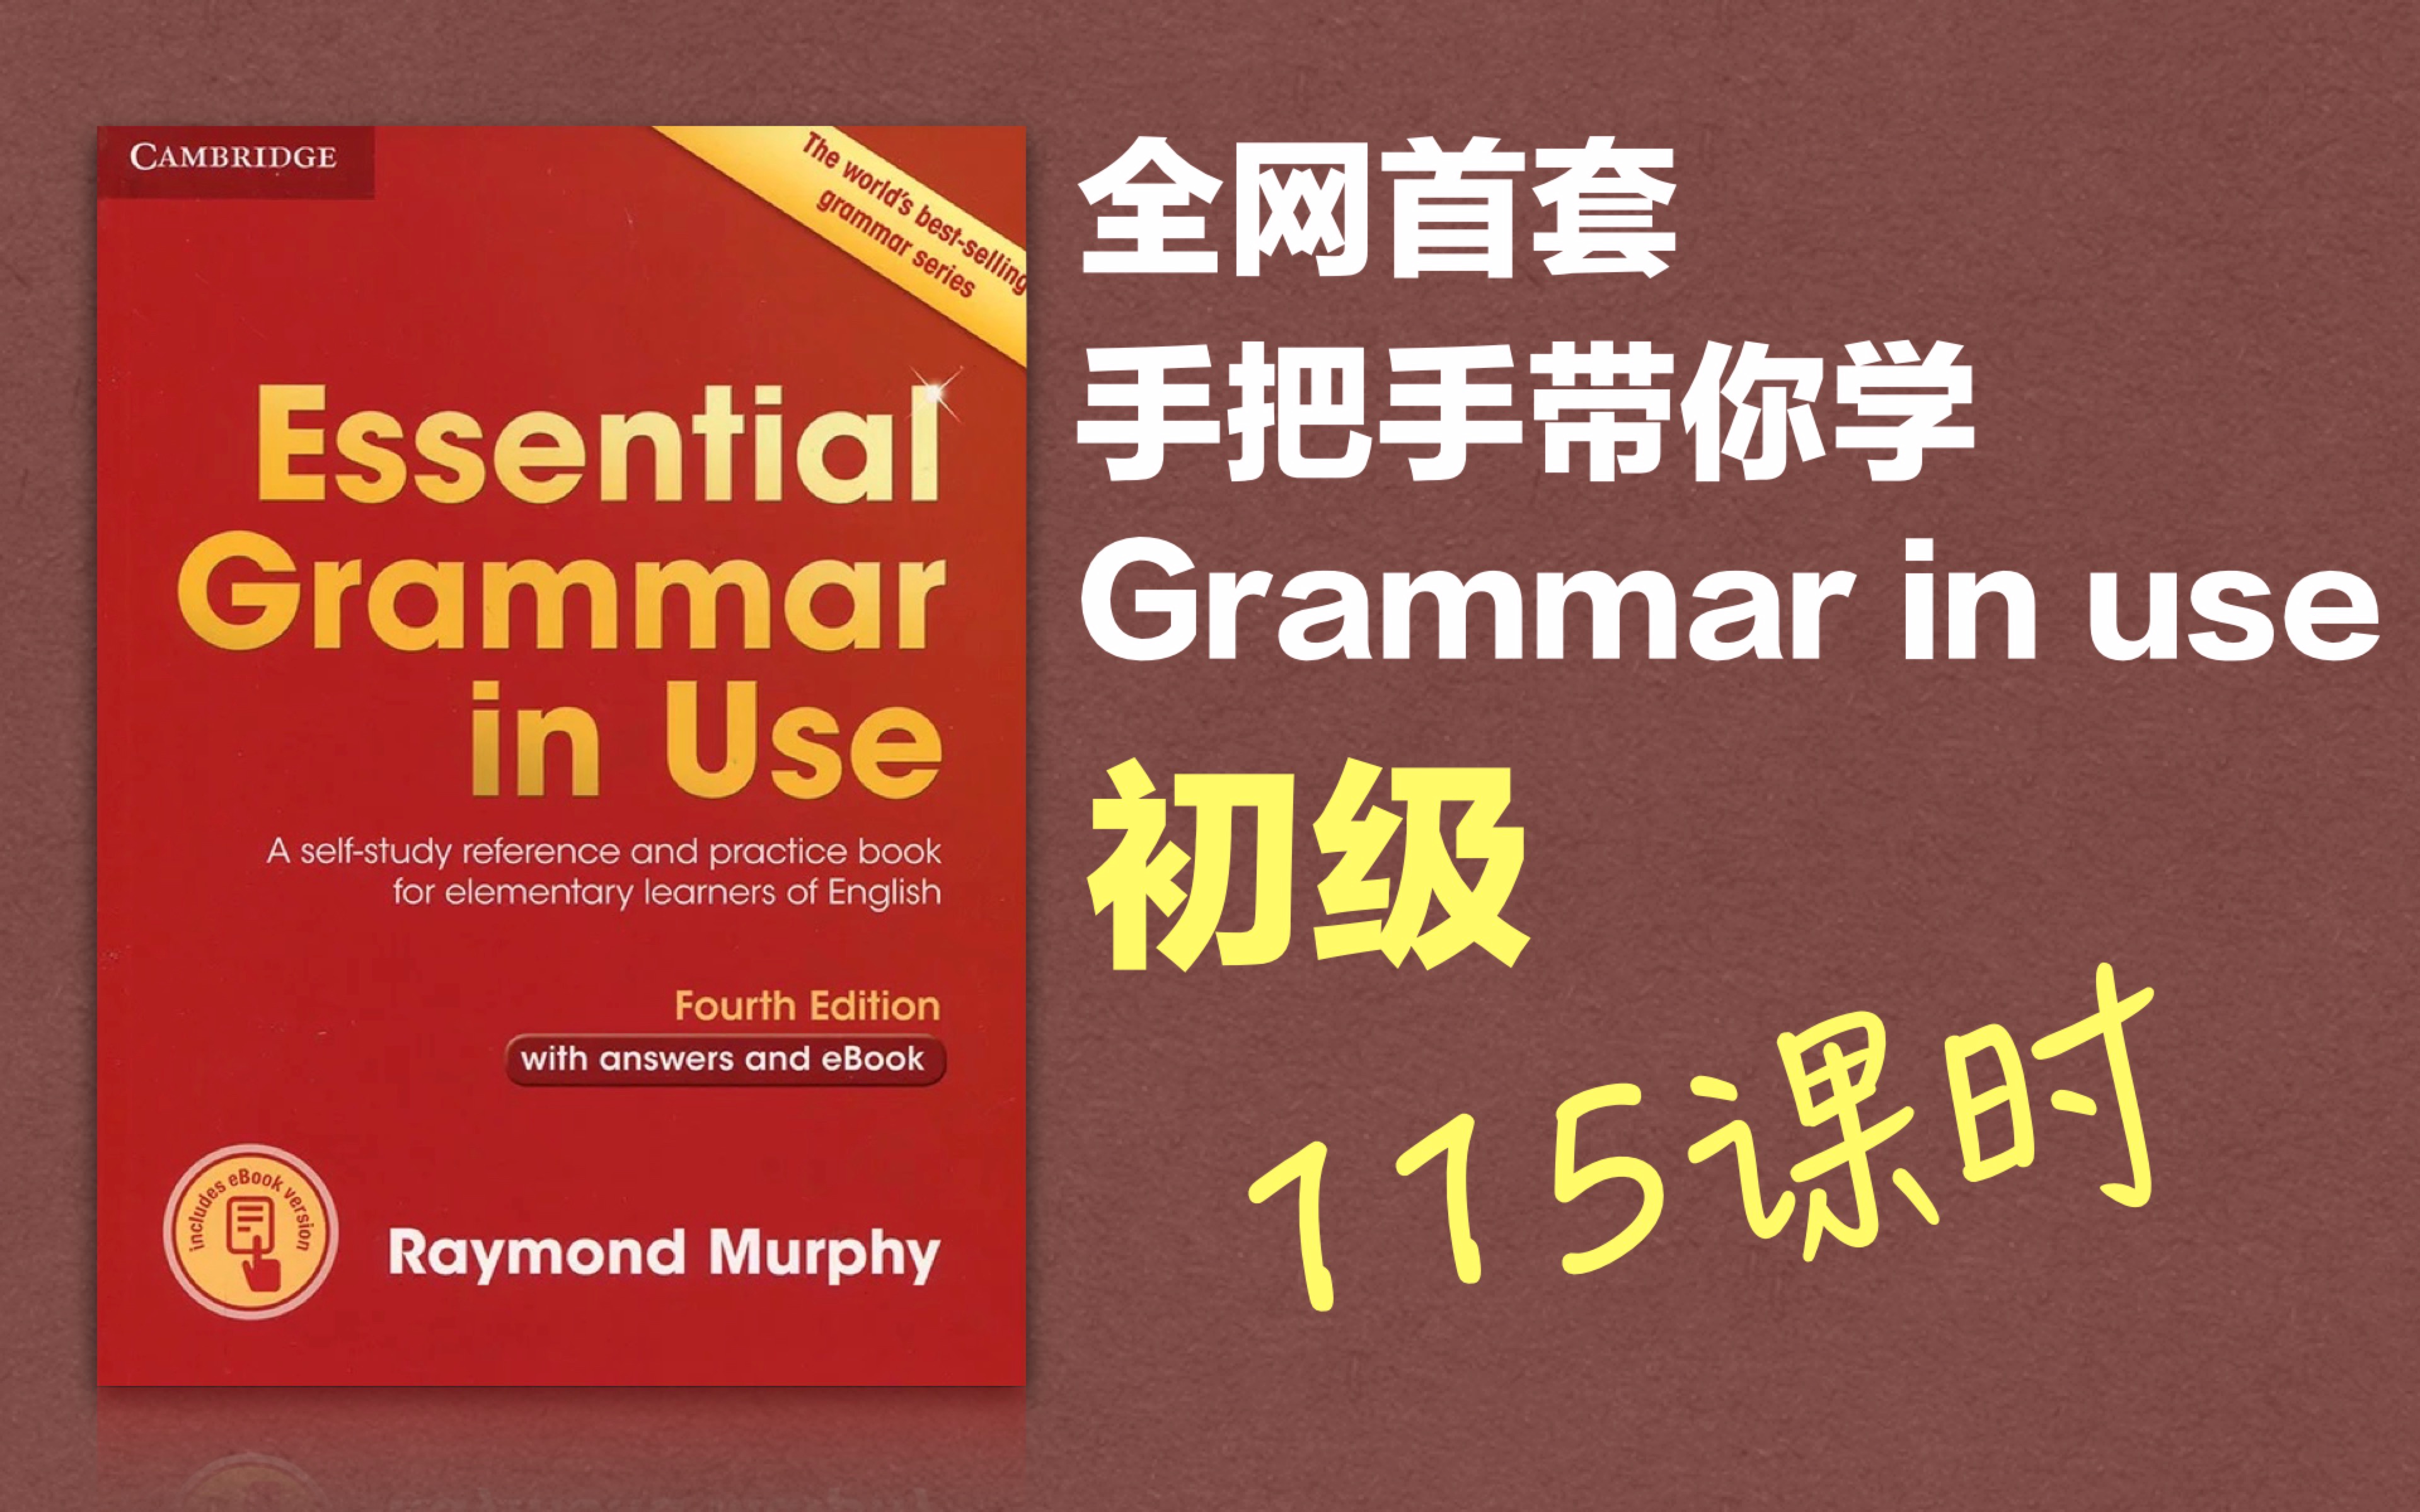 【完结】【Grammar in Use 全网首套视频教程】剑桥语法在用初级 手把手讲解 英语语法